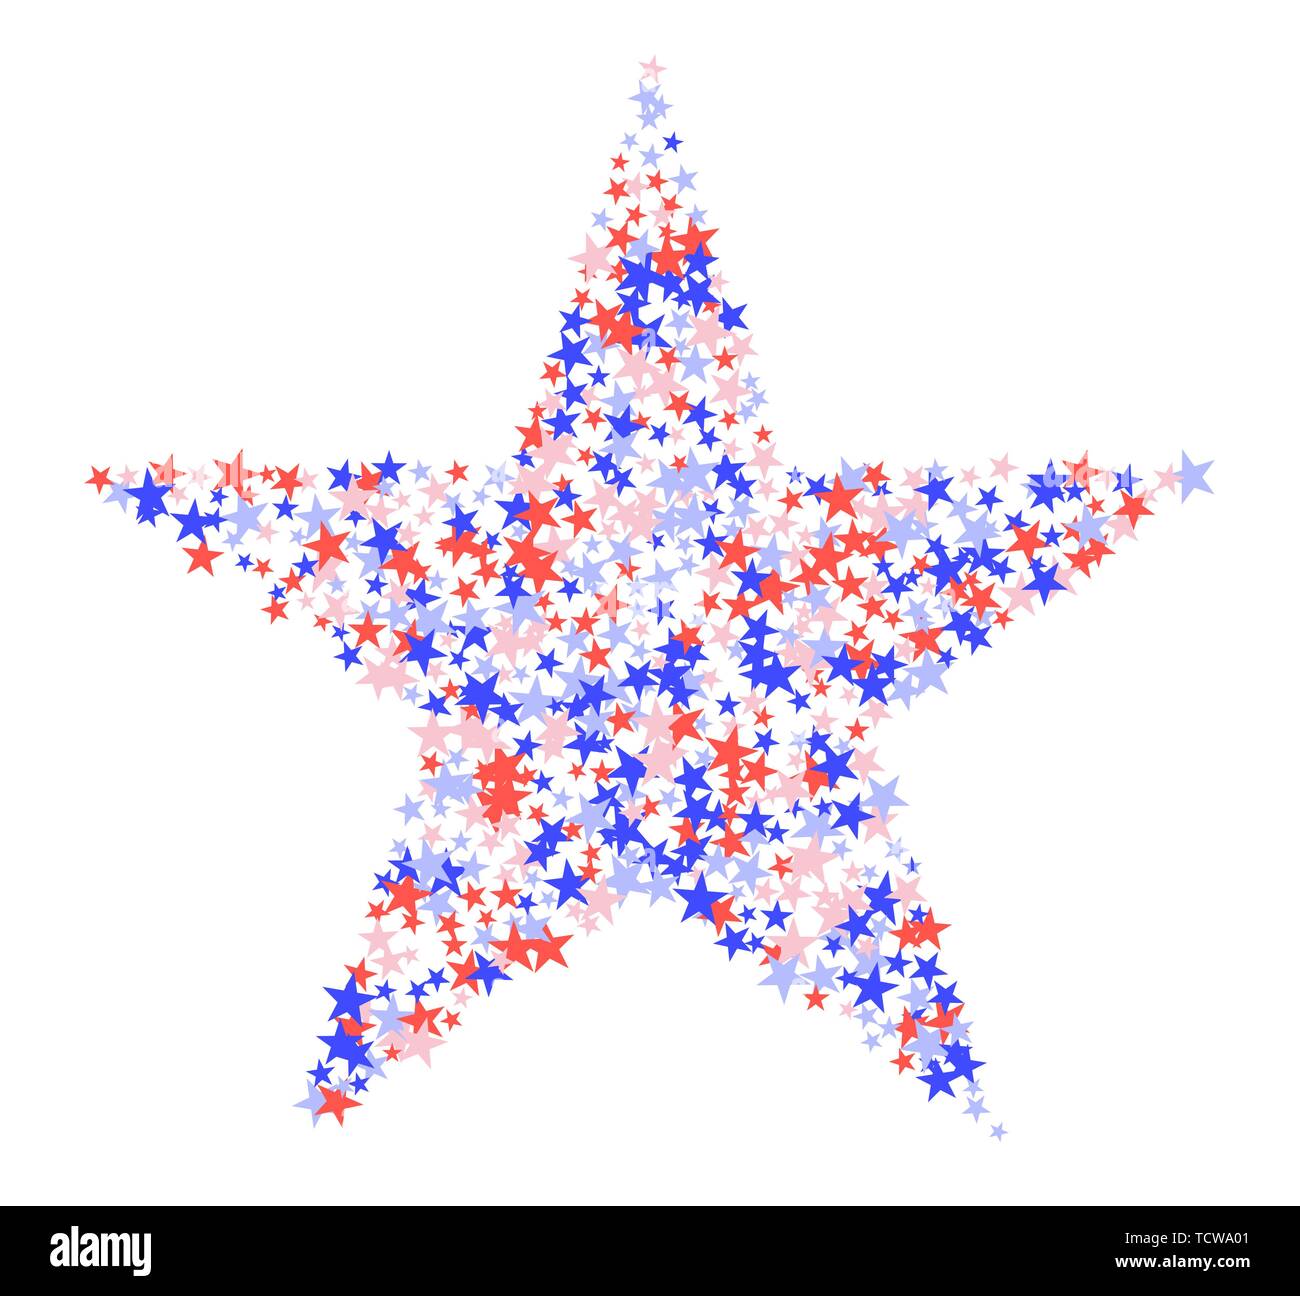 Am 4. Juli. Big Star aus vielen kleinen Sterne. Rote, blaue und weiße Konfetti, bunten Kulisse im abstrakten Stil. Vector Illustration auf Weiß Stock Vektor